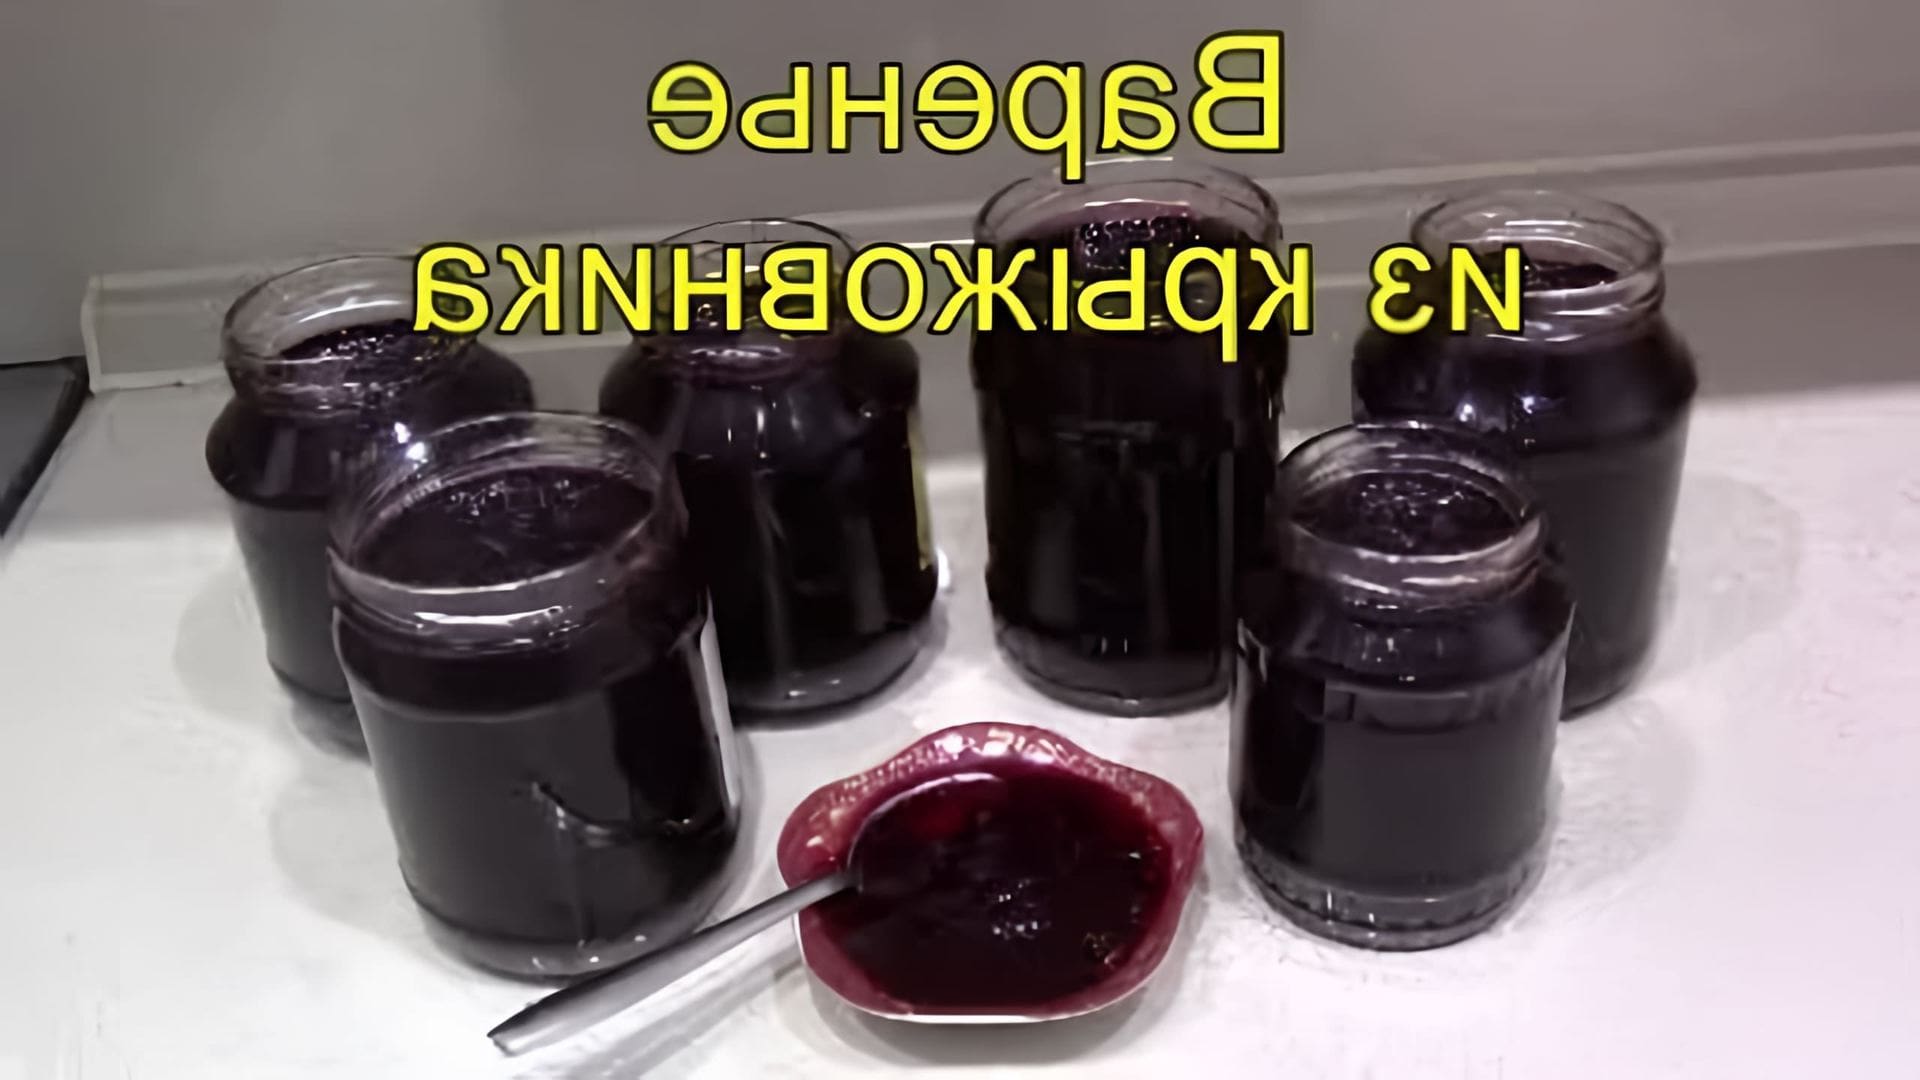 В этом видео демонстрируется простой рецепт приготовления вкусного варенья из крыжовника